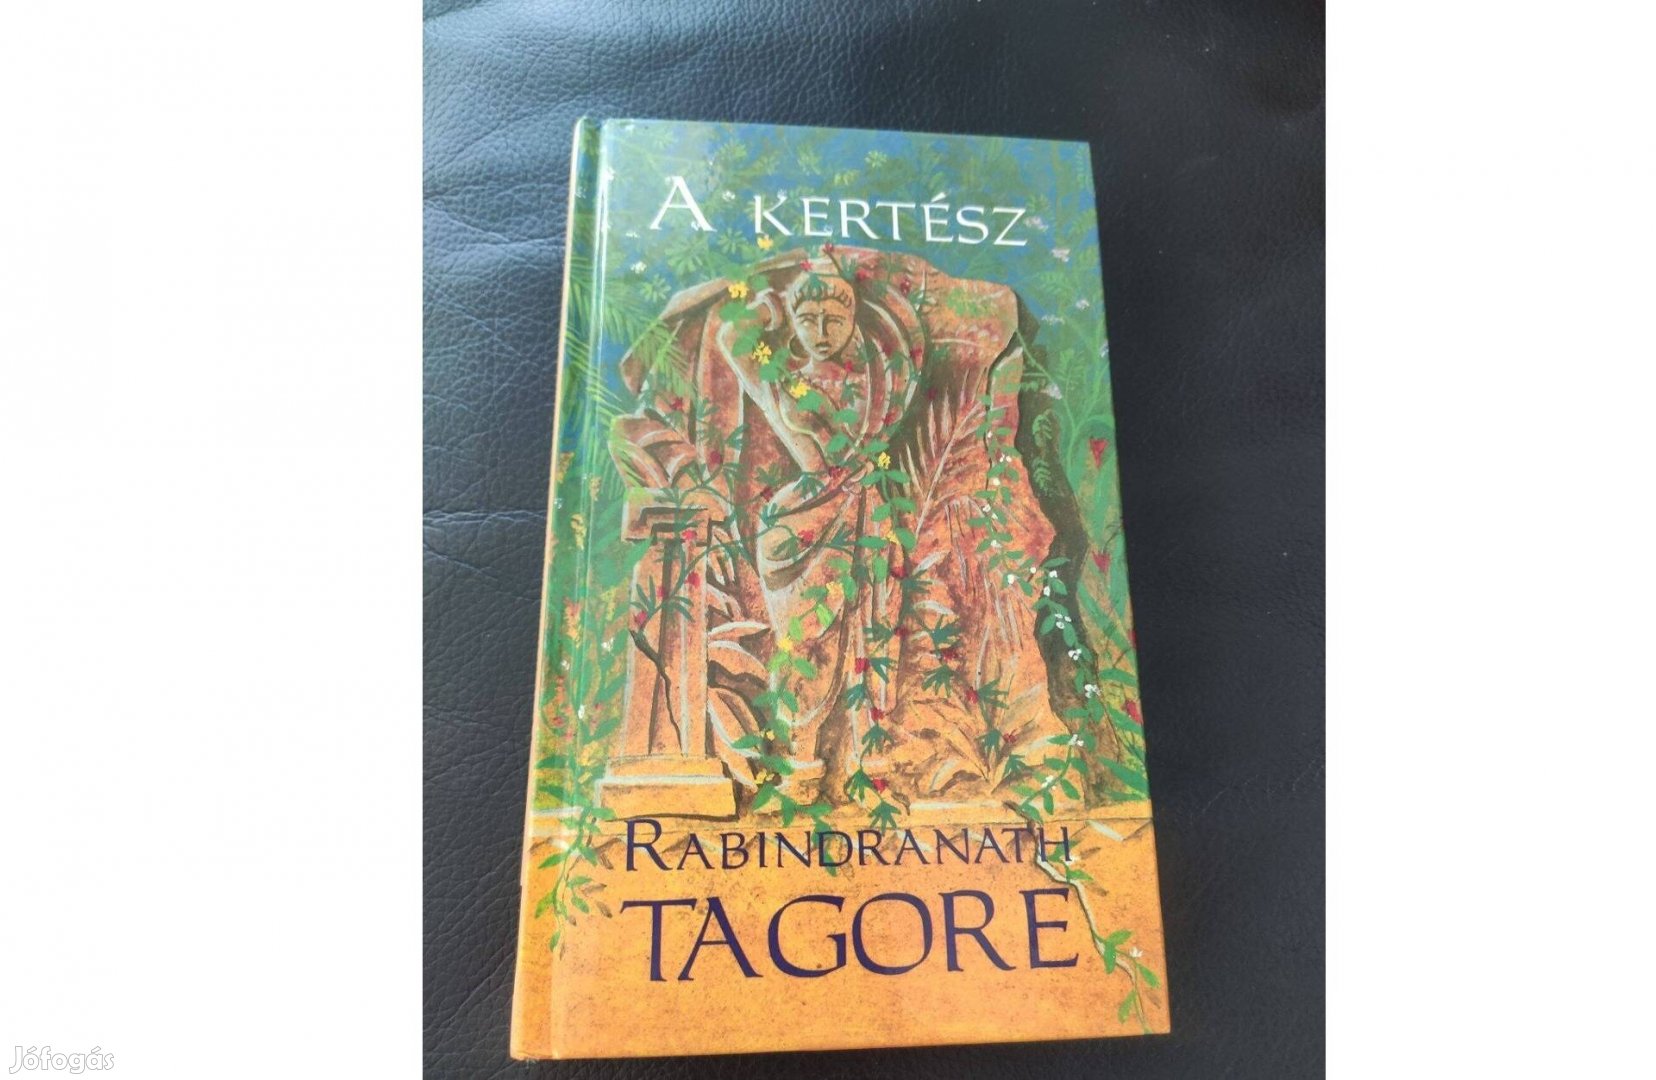 Tagore A kertész